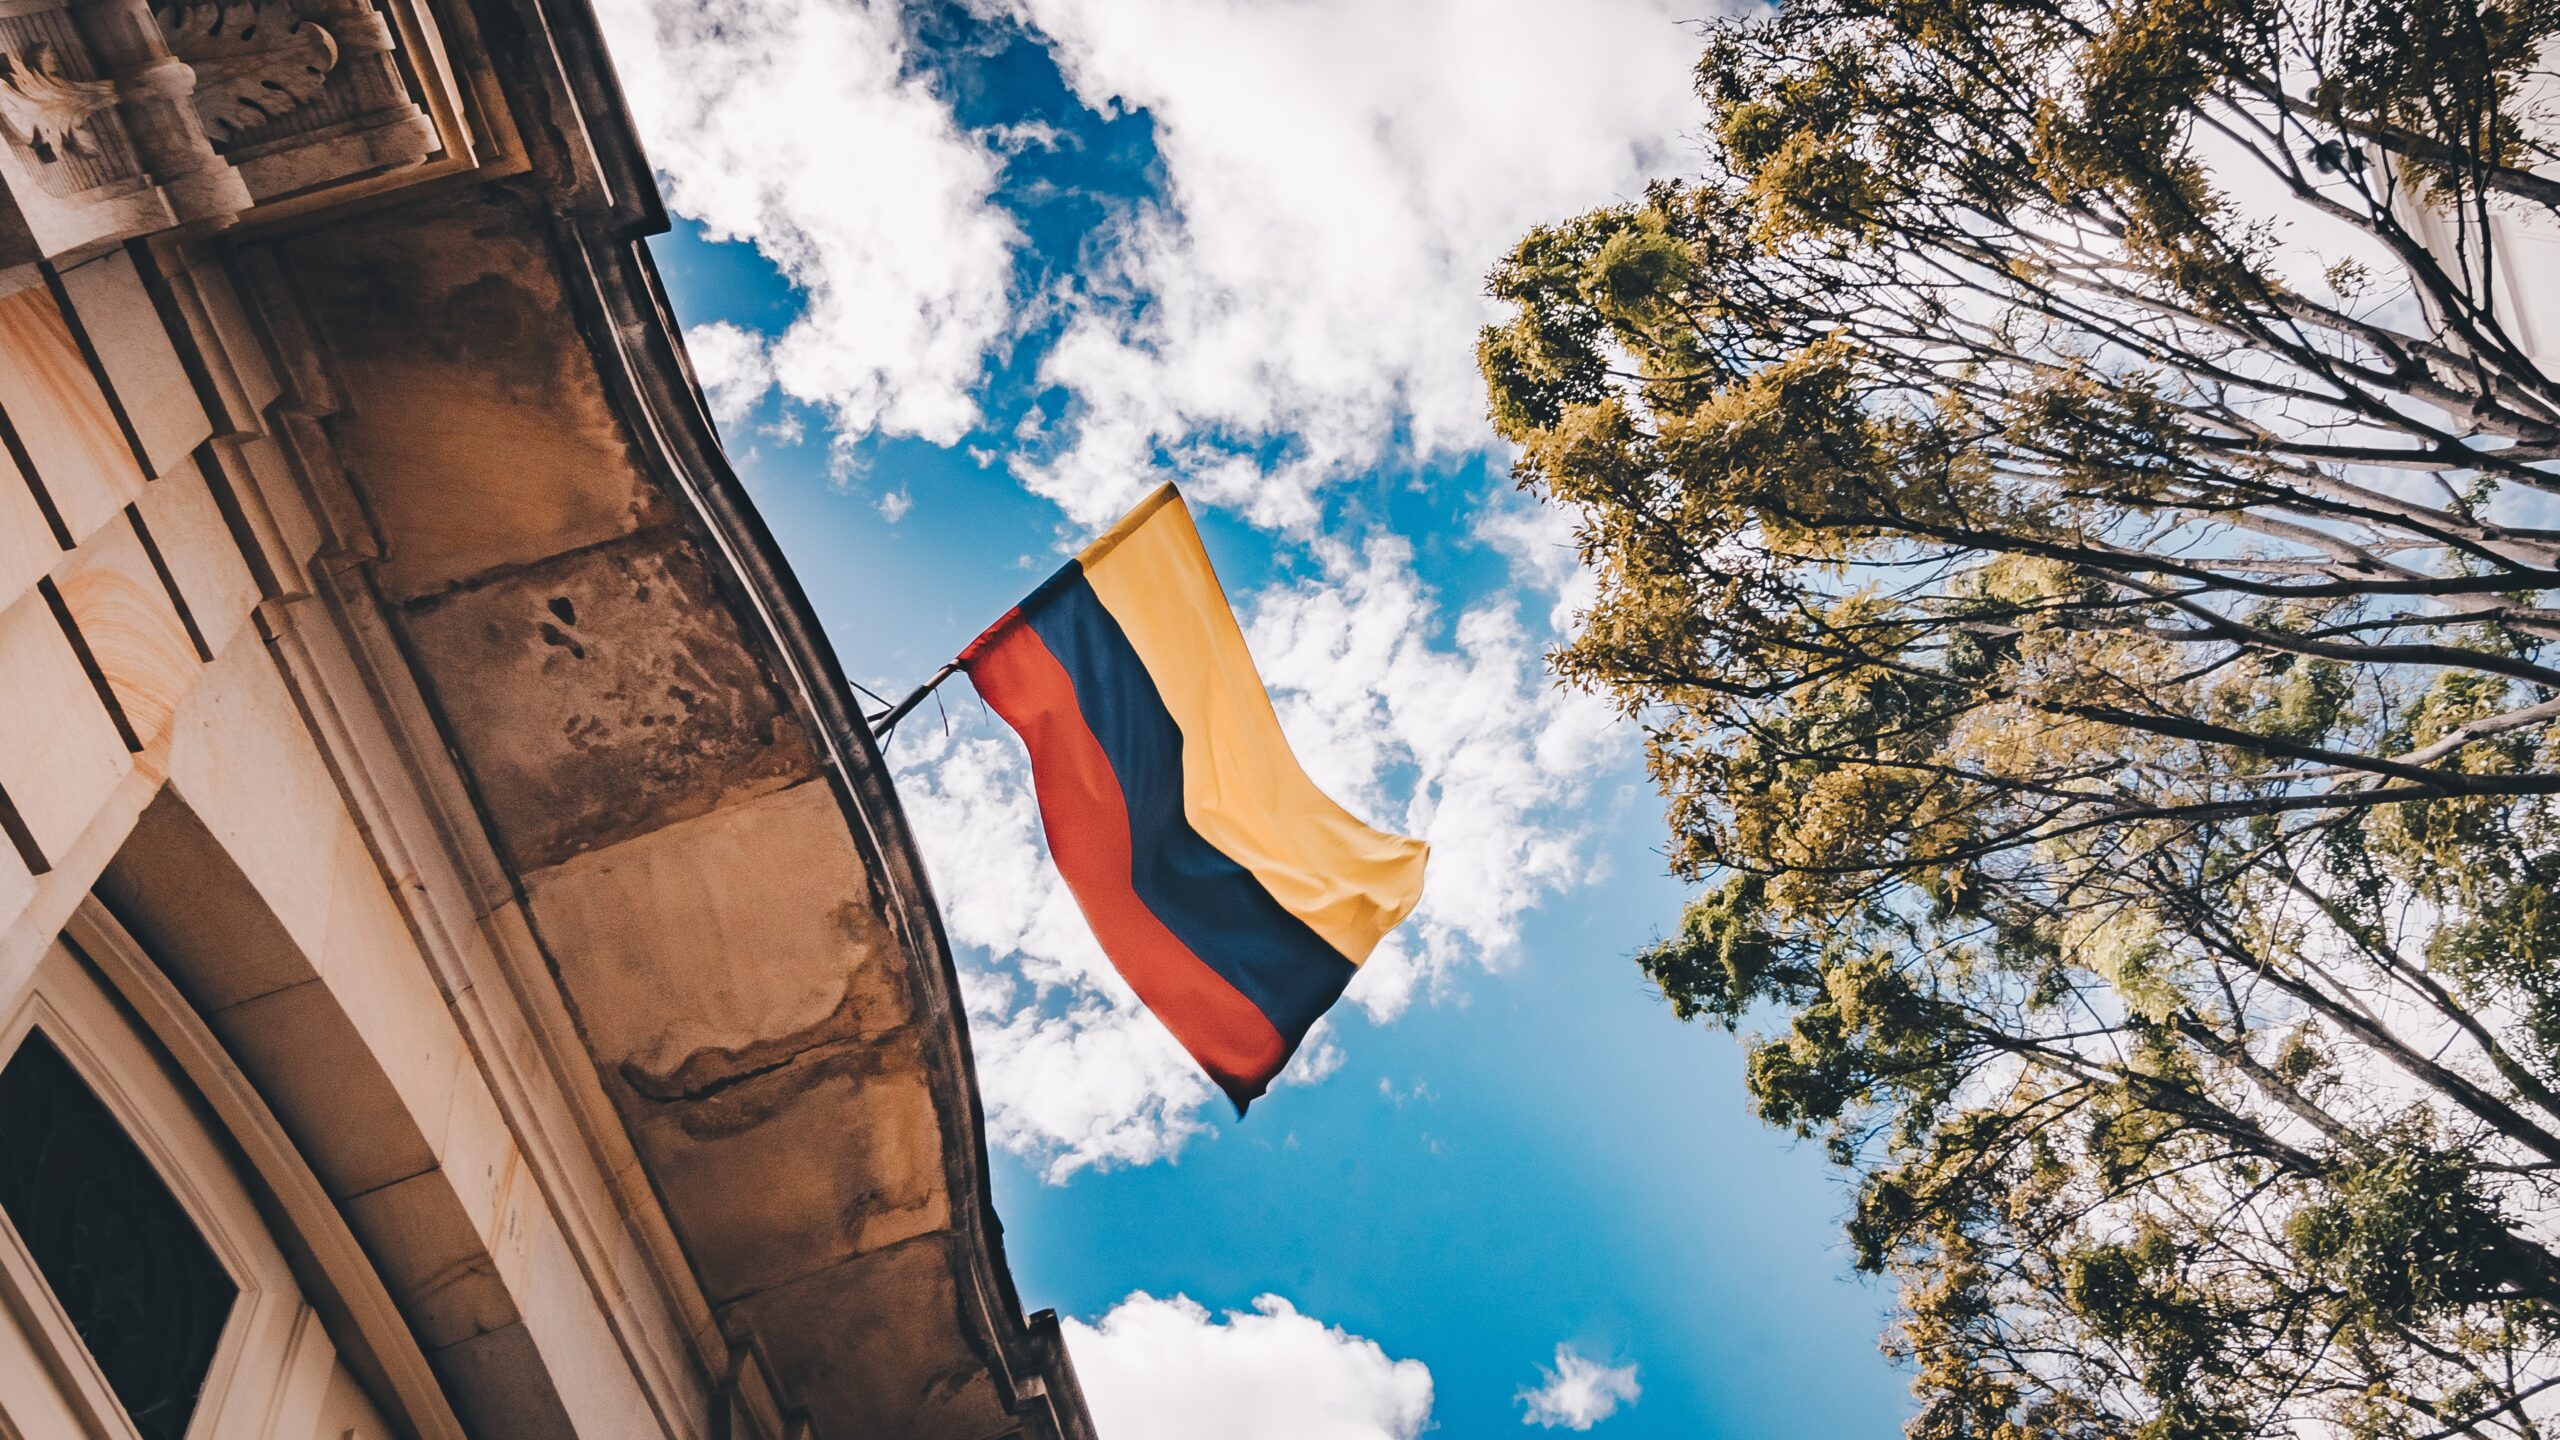 Vista do céu azul com algumas nuvens, à direita uma árvore e à esqueda uma casa com uma bandeira da Colombia.